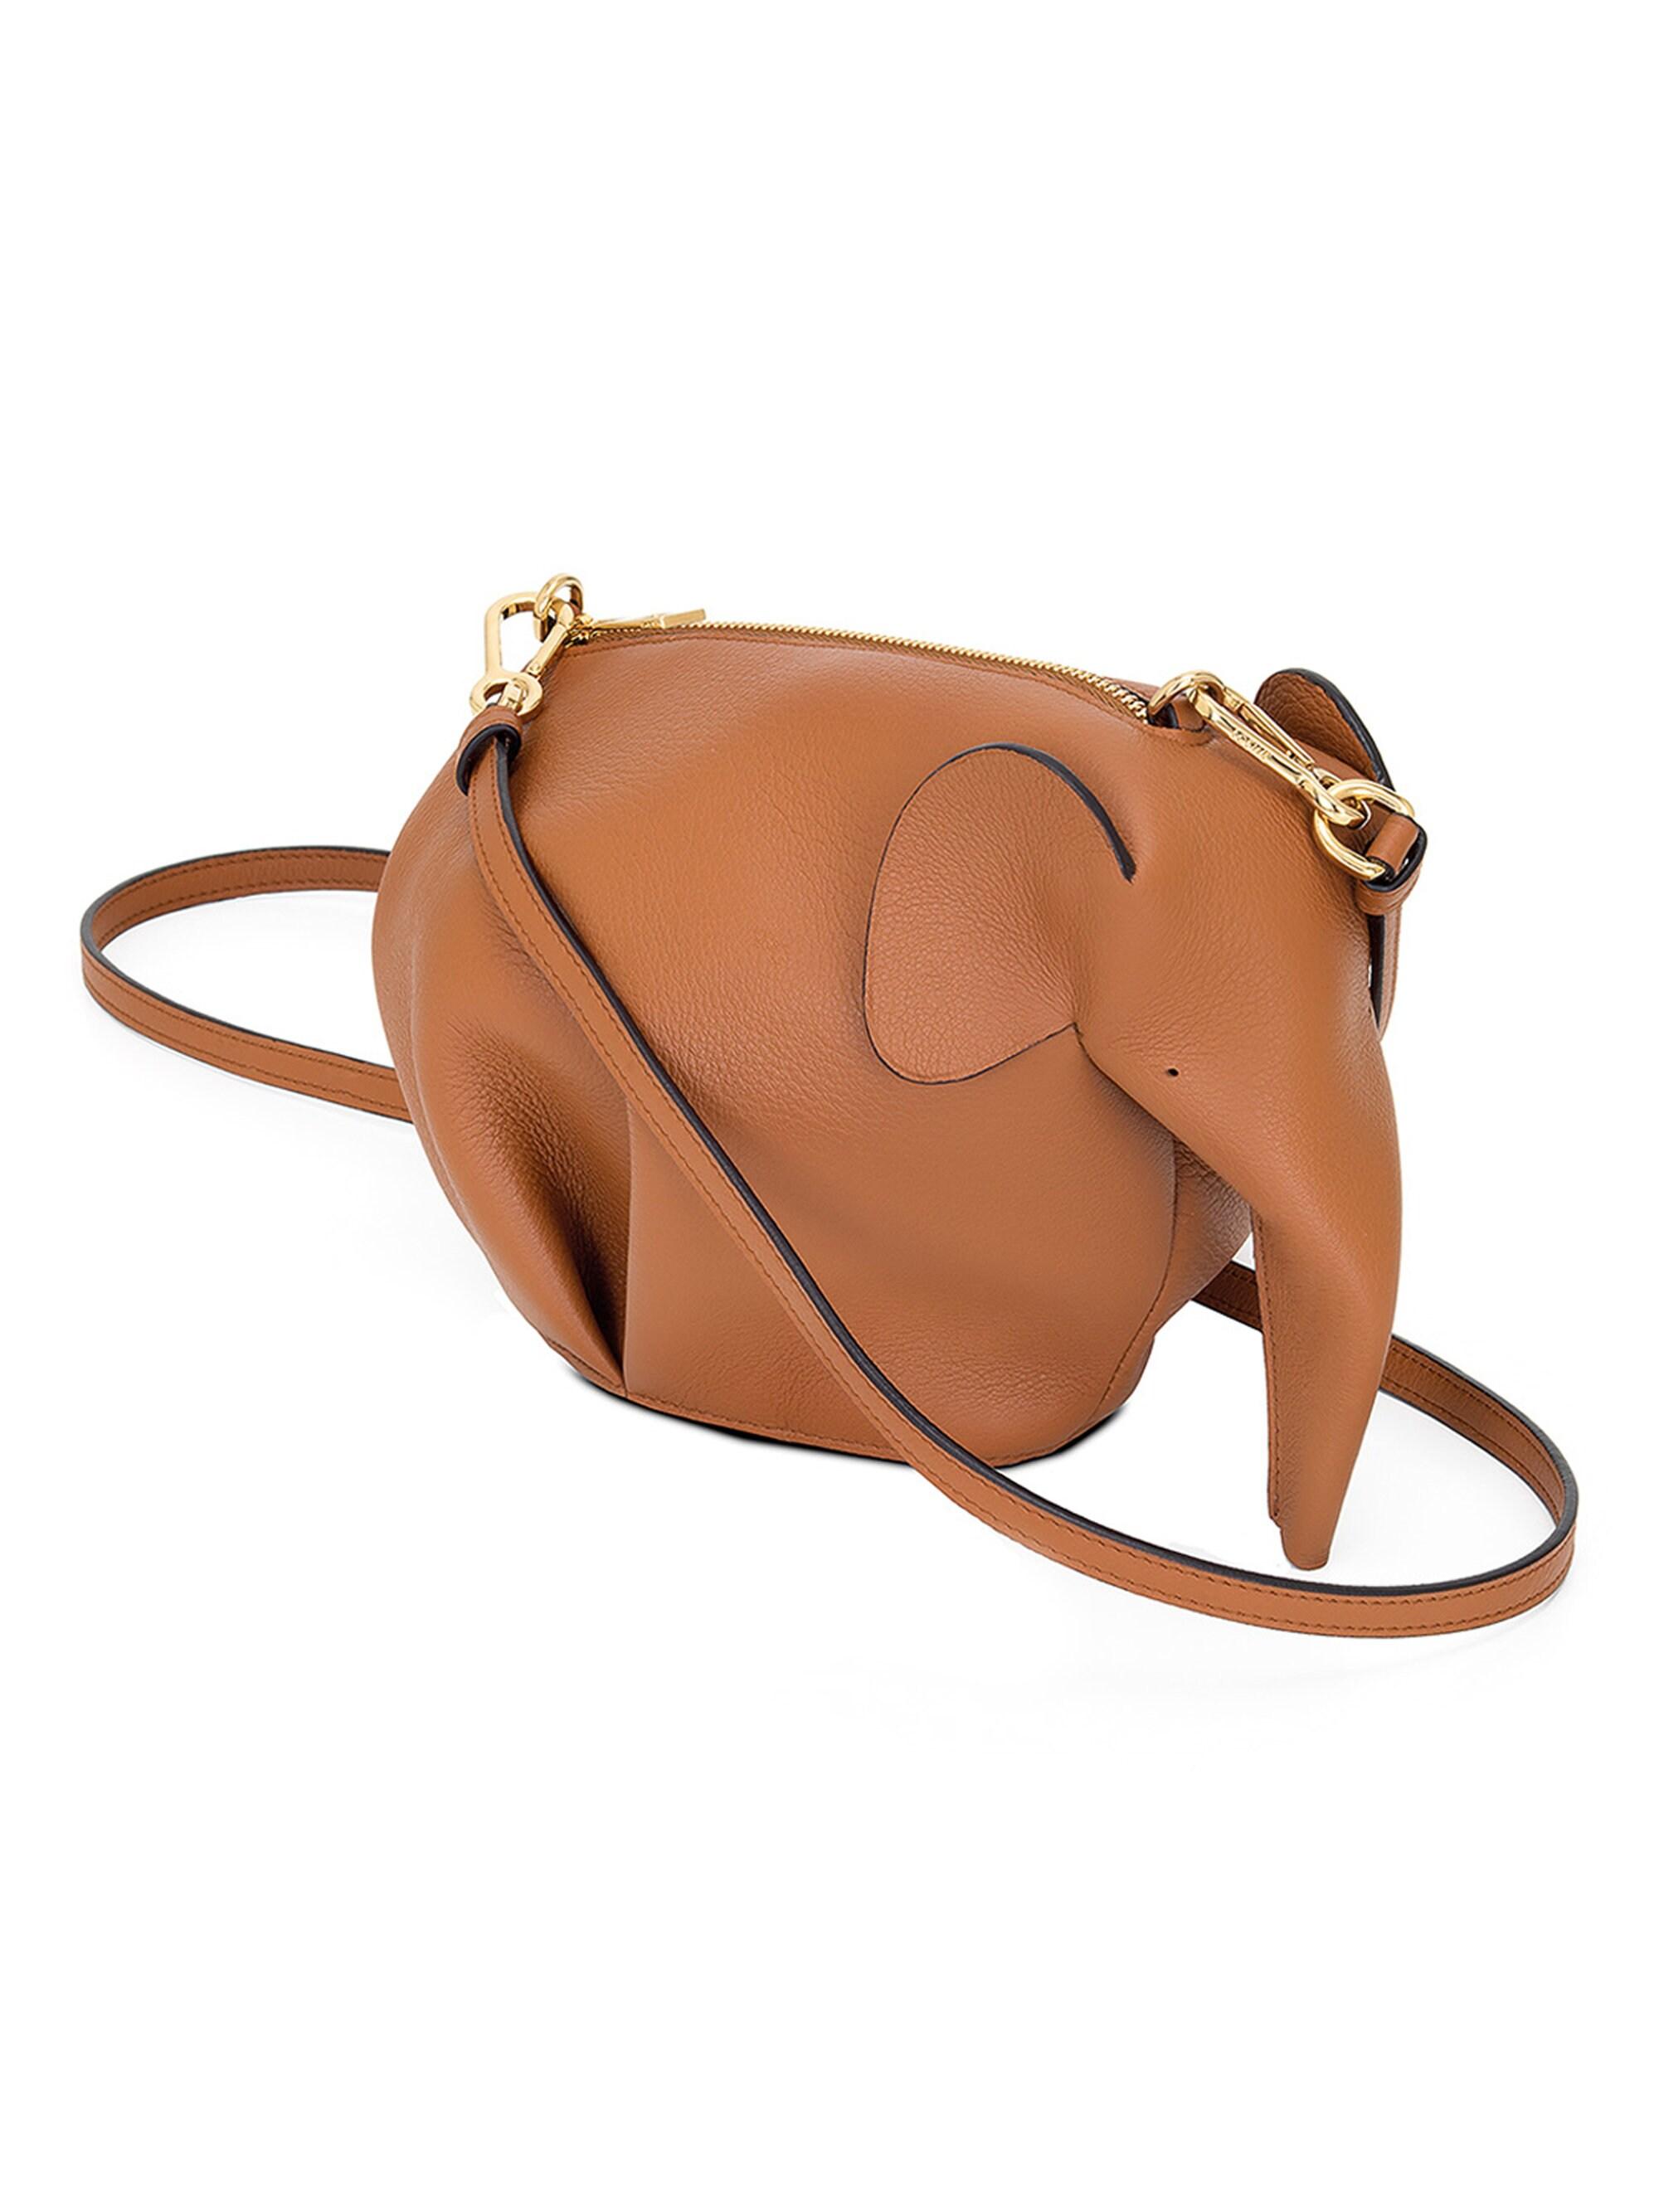 Loewe Elephant Mini Leather Shoulder Bag in Brown - Lyst